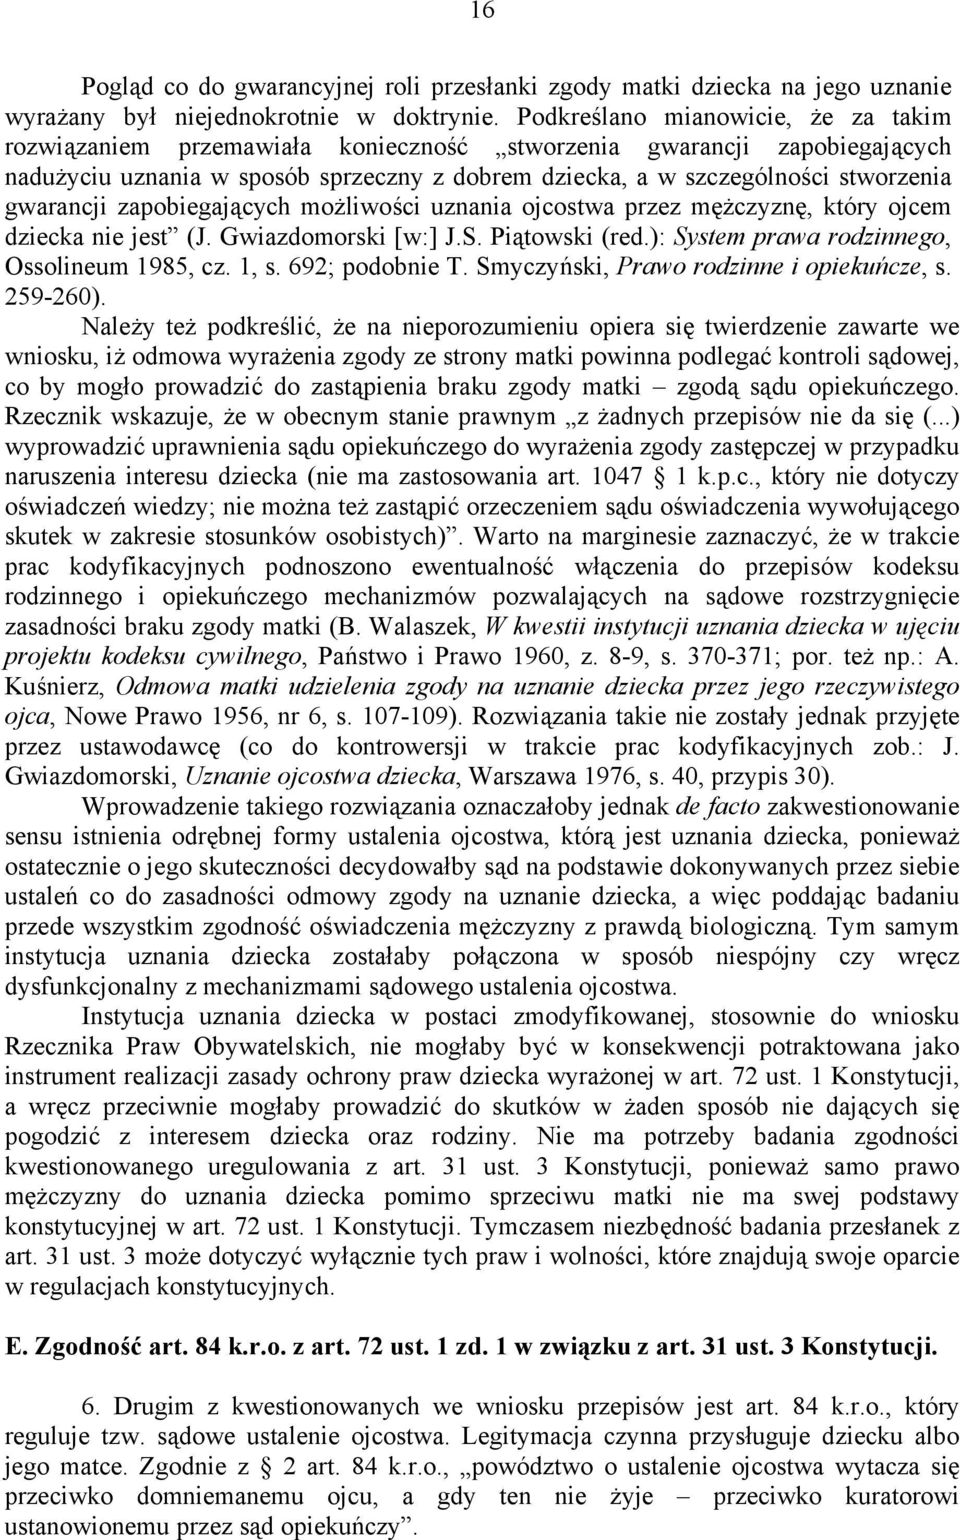 gwarancji zapobiegających możliwości uznania ojcostwa przez mężczyznę, który ojcem dziecka nie jest (J. Gwiazdomorski [w:] J.S. Piątowski (red.): System prawa rodzinnego, Ossolineum 1985, cz. 1, s.